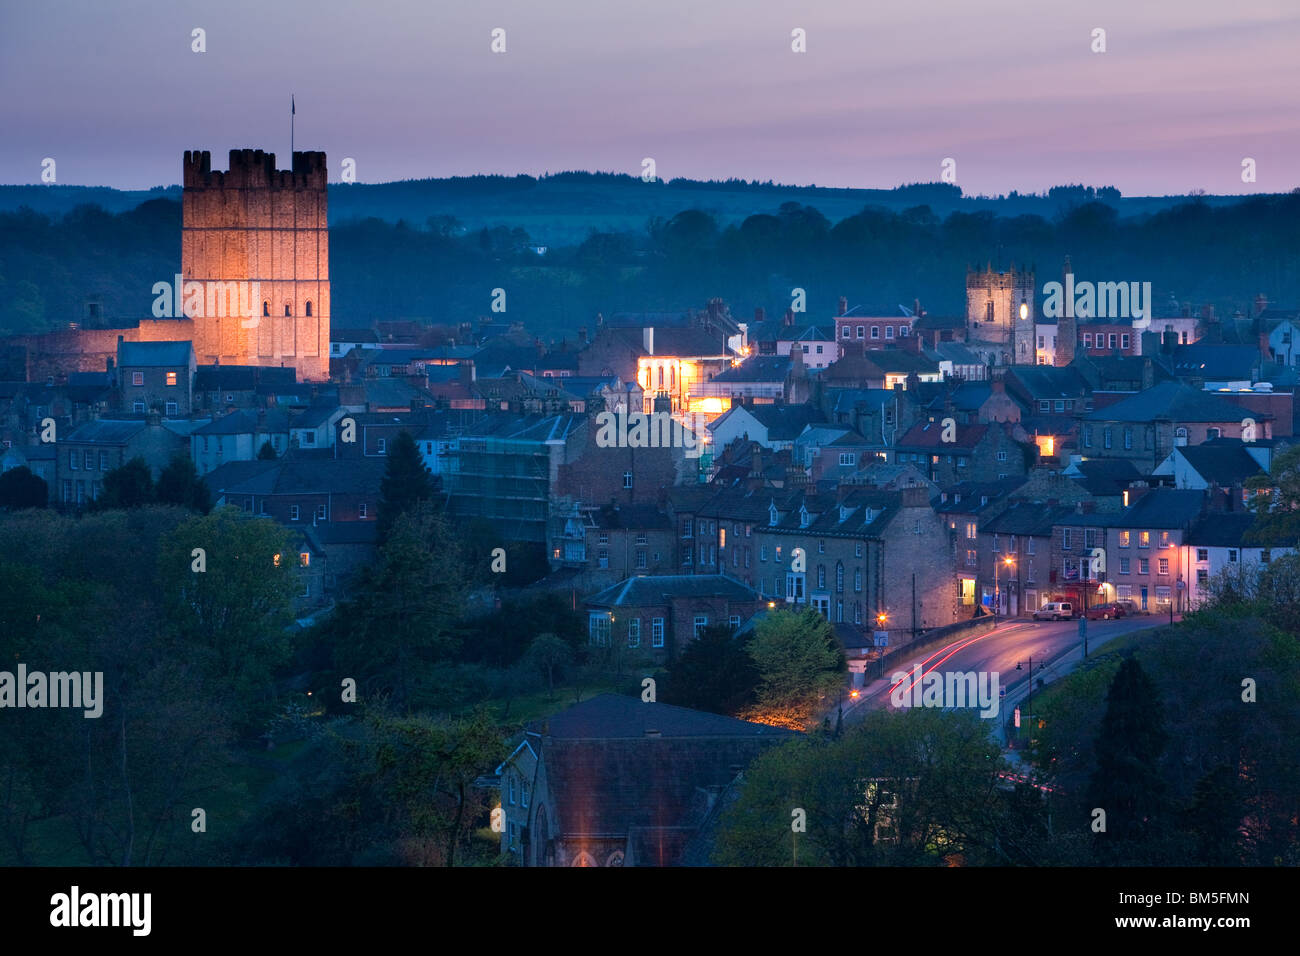 Crépuscule dans la ville historique de Richmond montrant le château éclairé North Yorkshire, Angleterre Banque D'Images